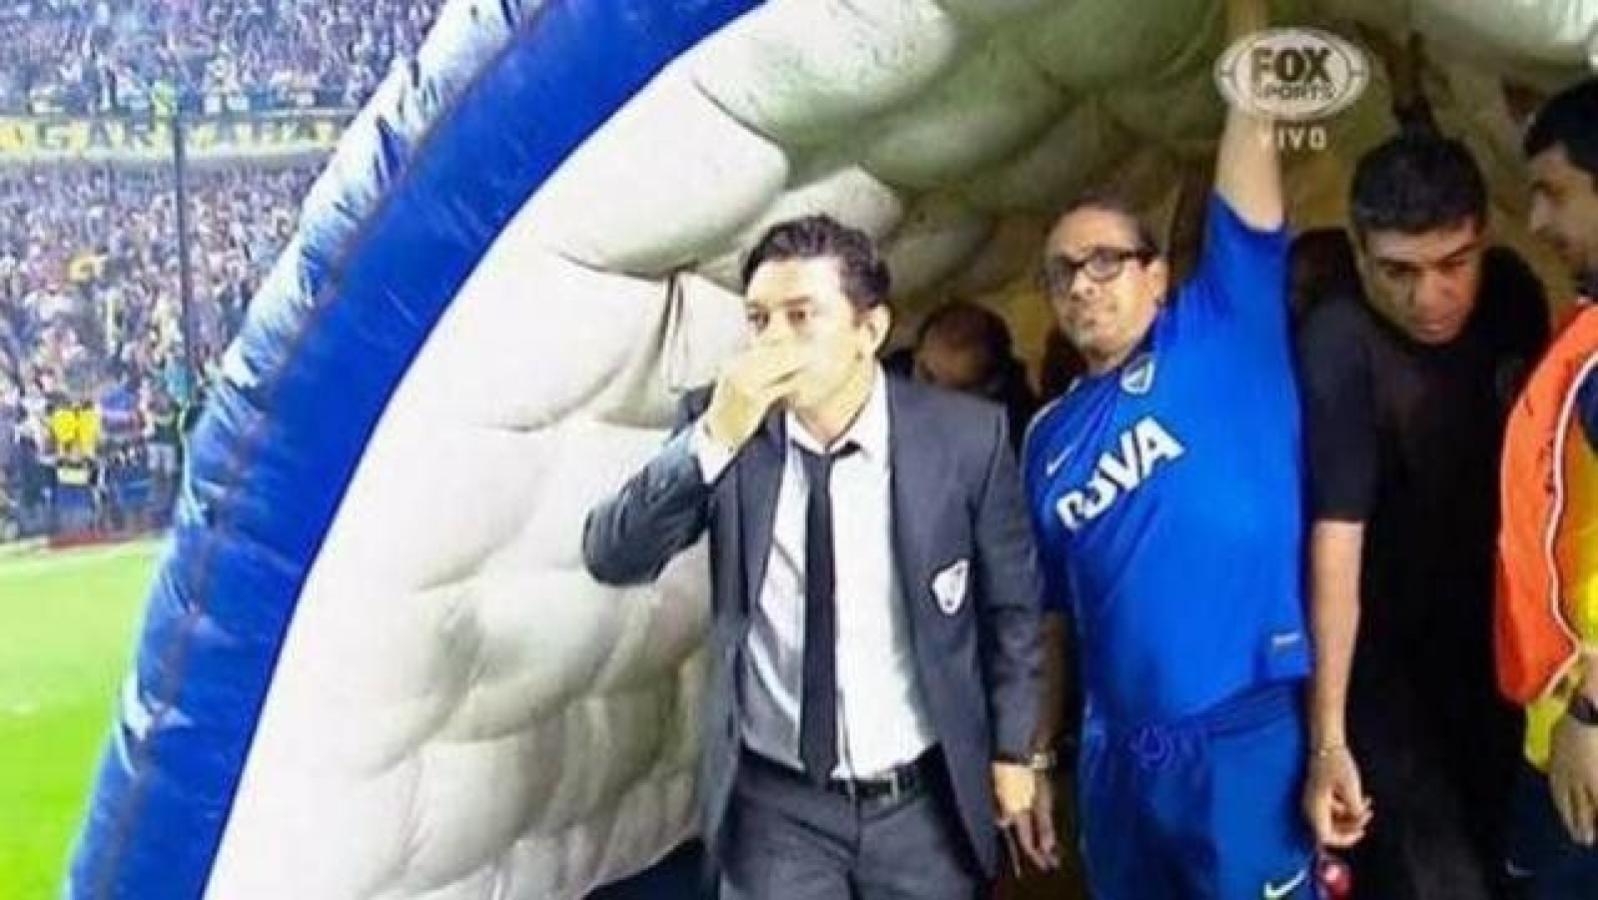 Imagen ¿Casulidad o provocación? Gallardo se toca la naríz al ingresar a la cancha de Boca Juniors.